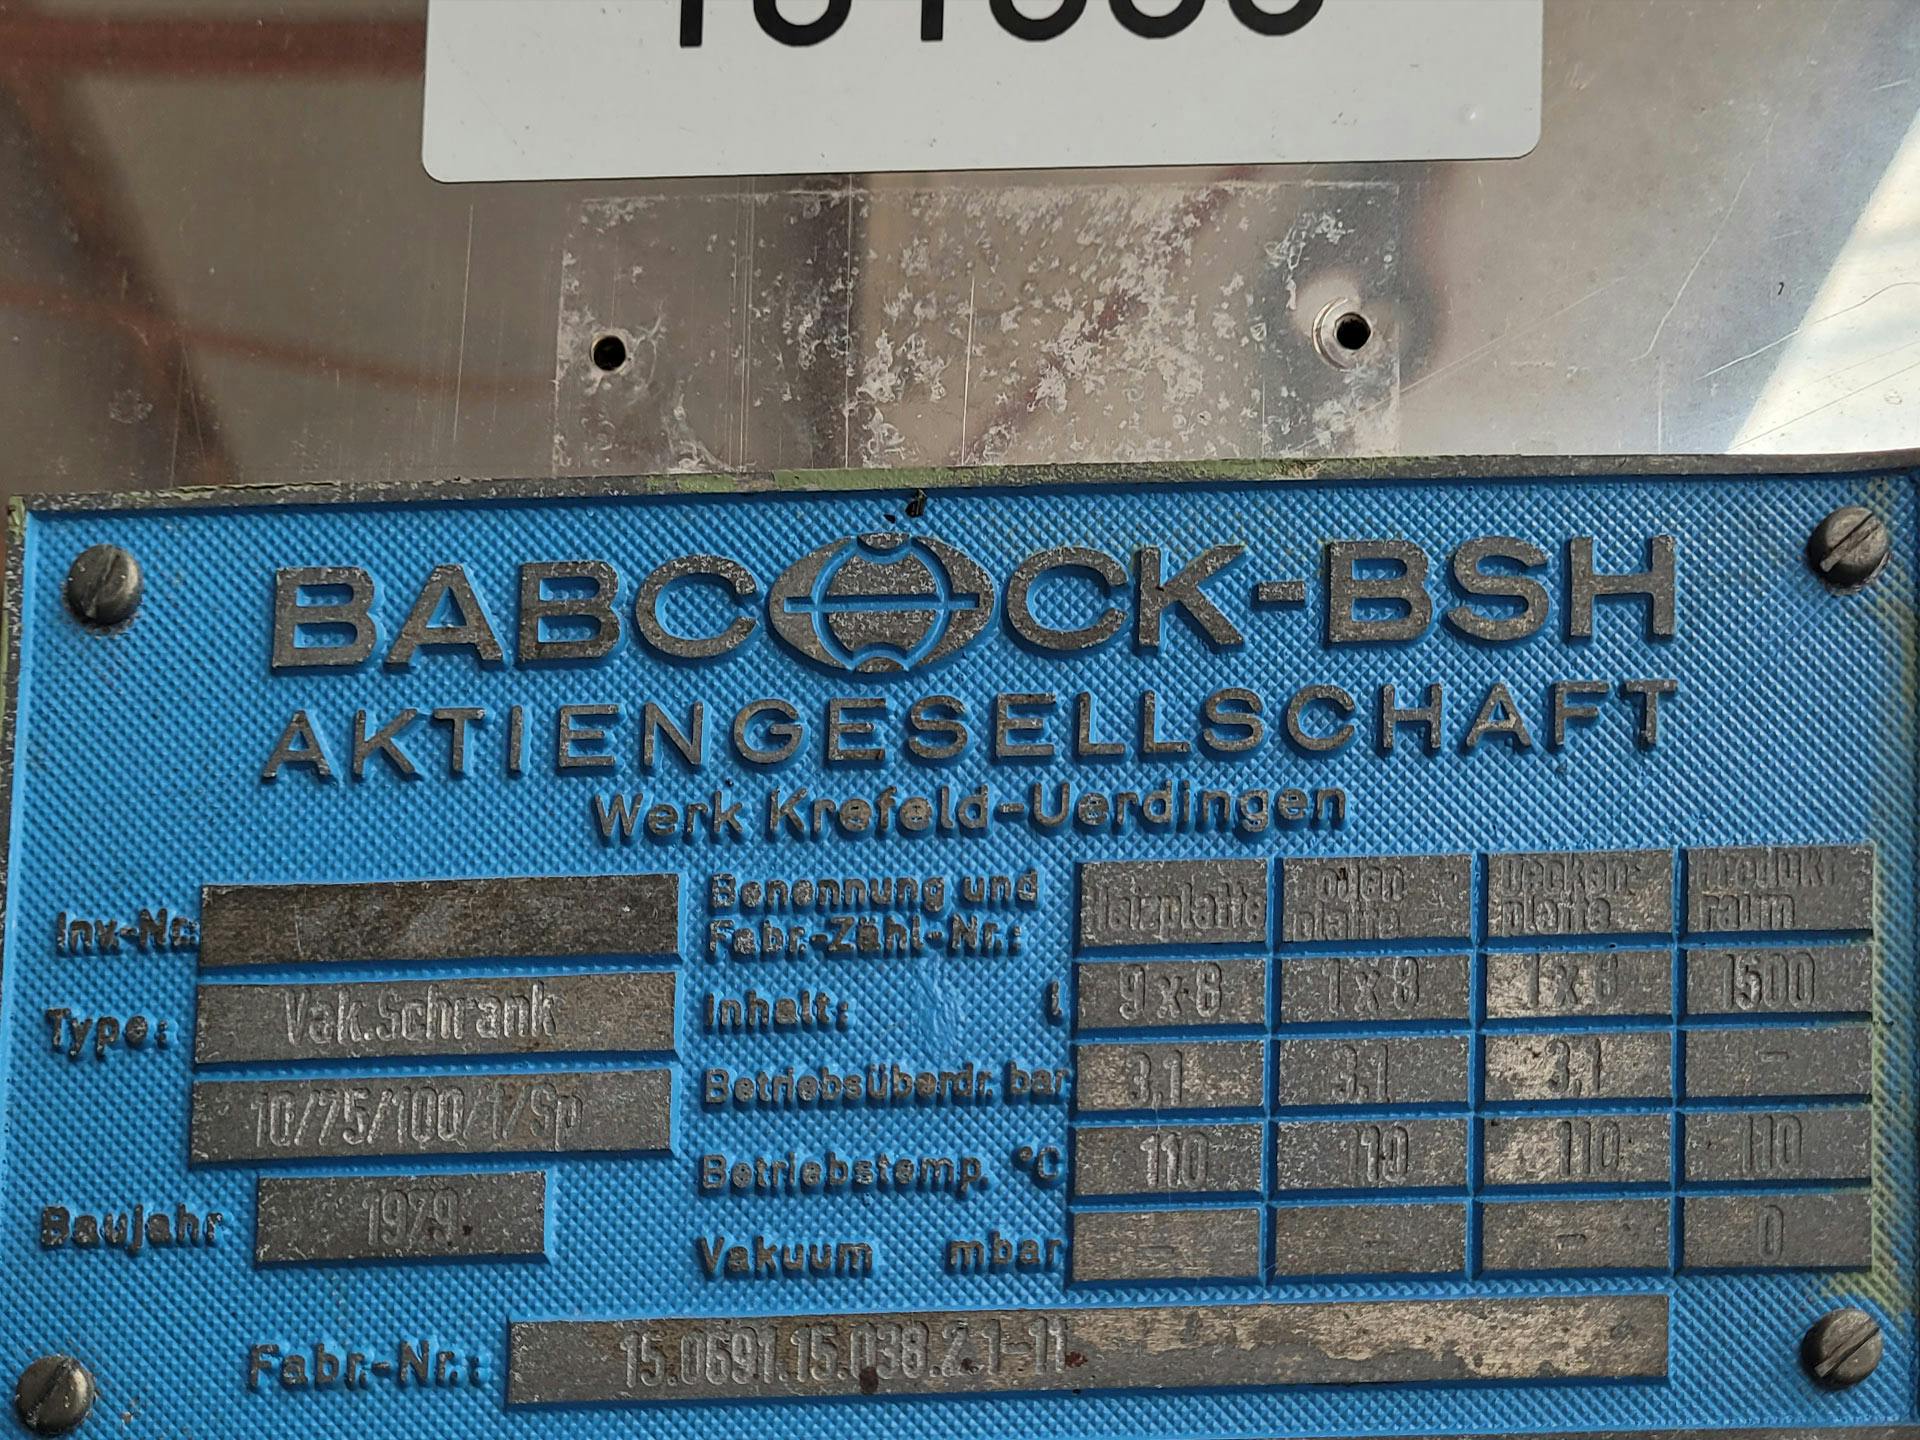 Babcock-BSH 10/75/100/1/SP - Secador de bandejas - image 5